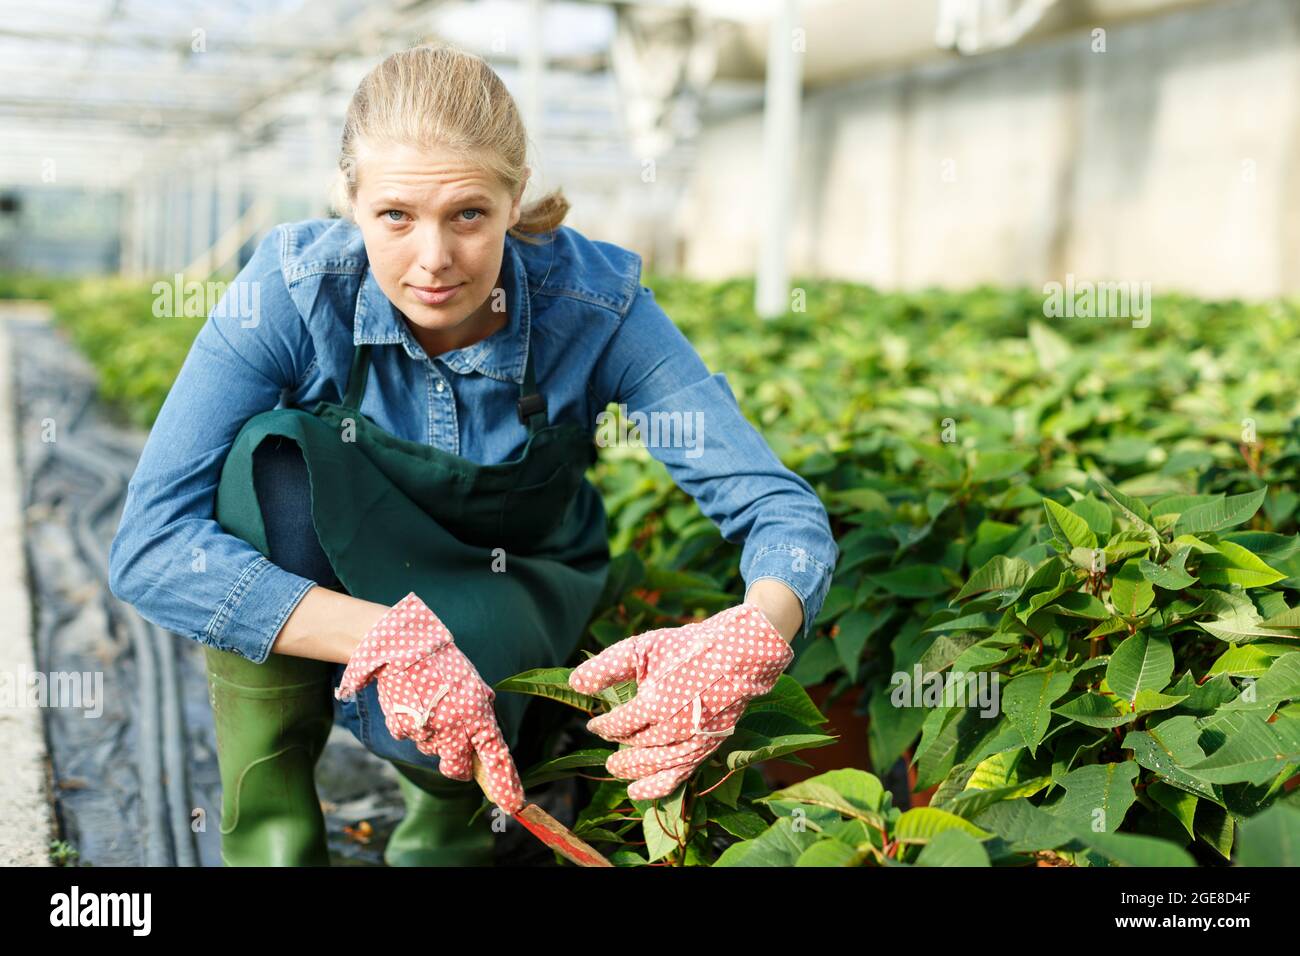 Mujer que trabaja con plantas de semillero pulcherrima de poinsettia en potes de invernadero Foto de stock